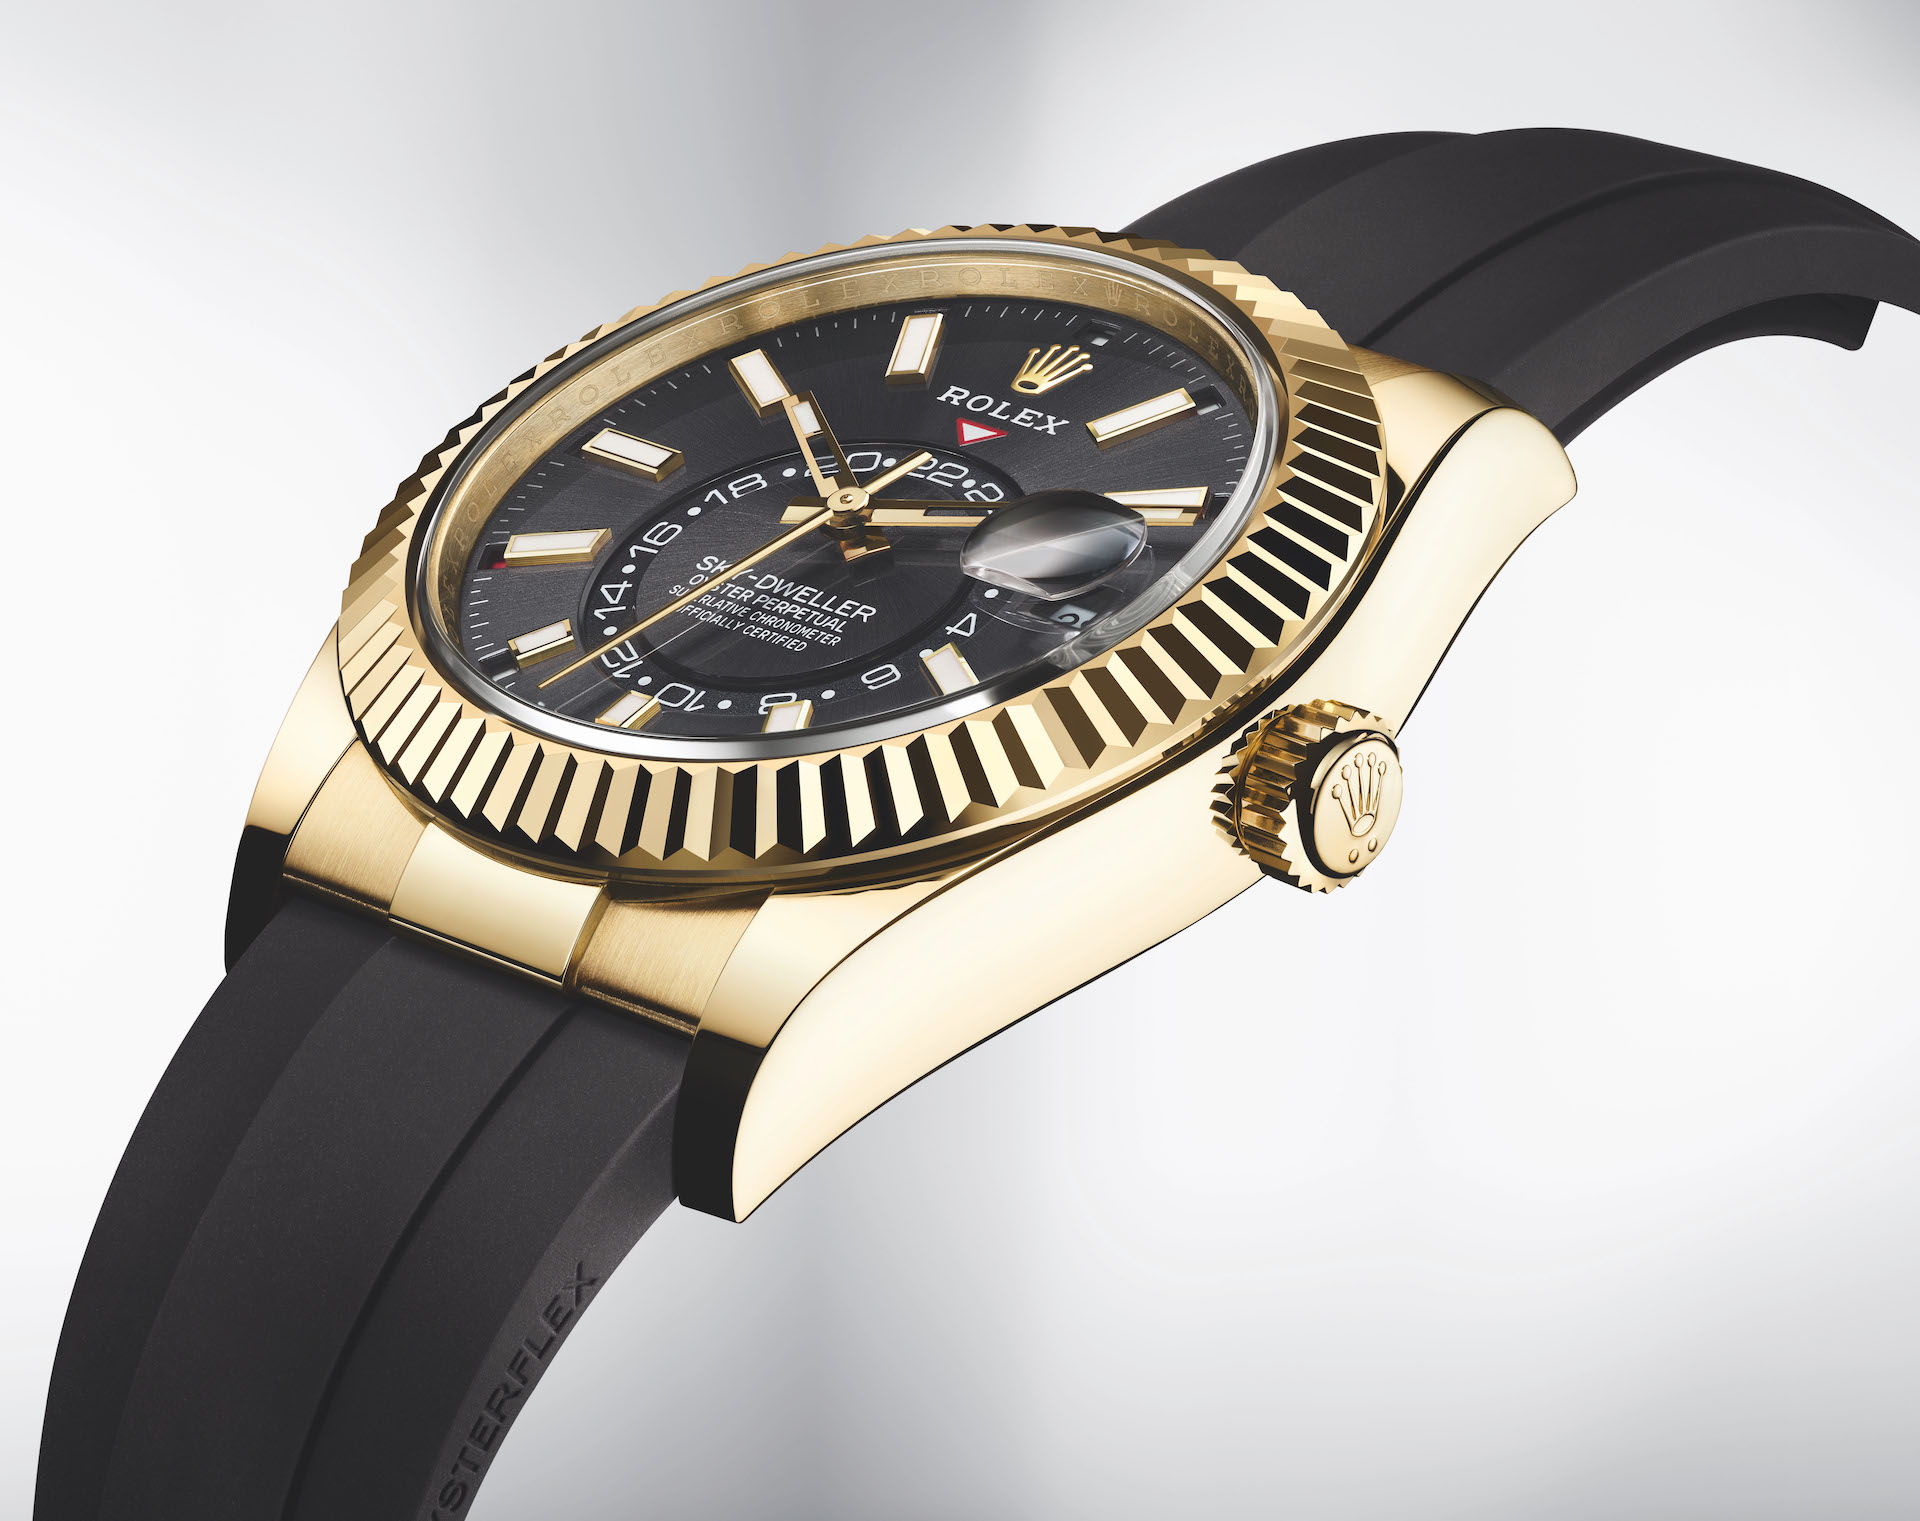 Hands-On: Rolex Sky-Dweller Watch On Oysterflex Bracelet Hands-On 